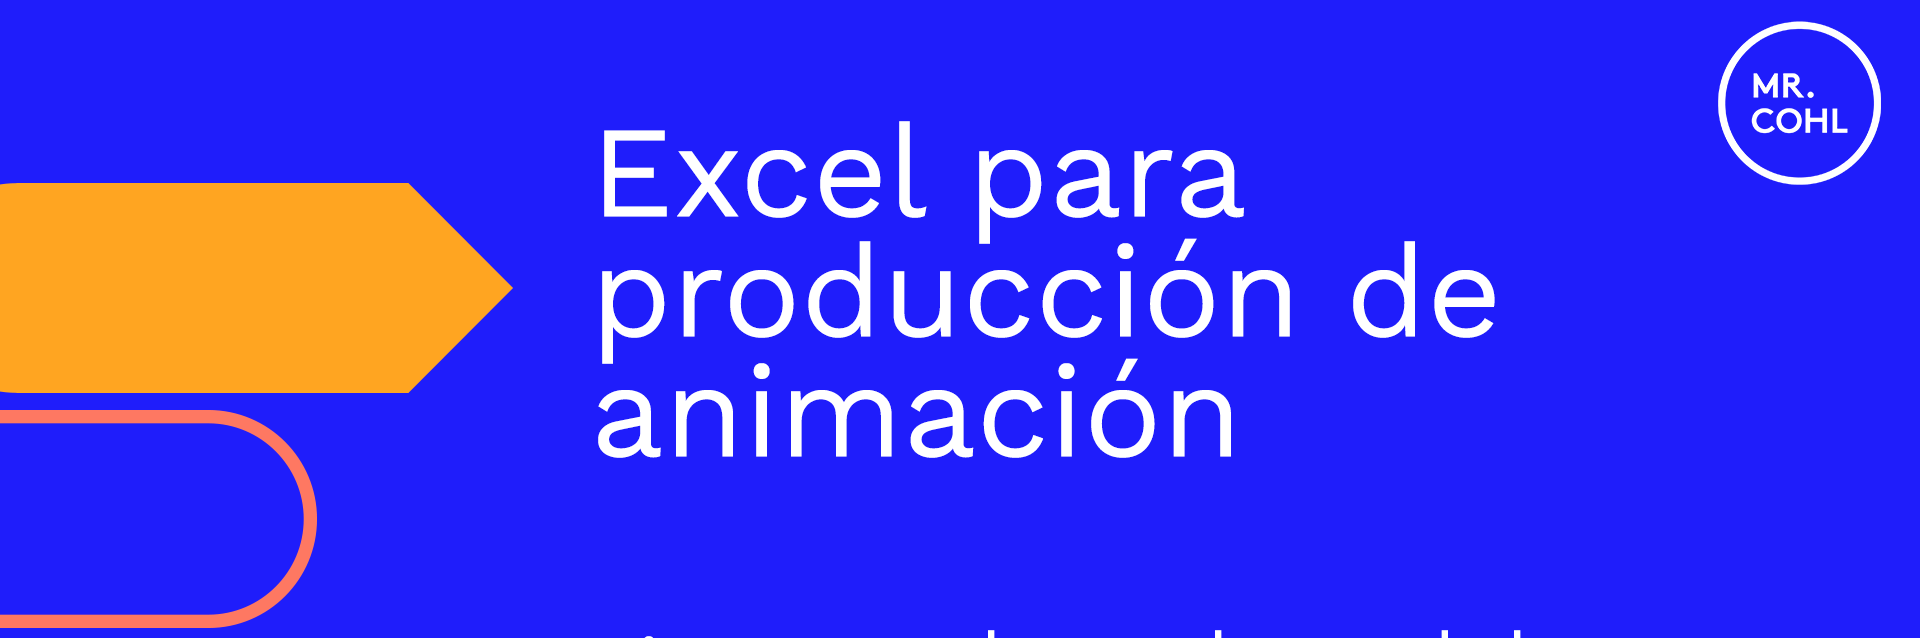 Excel para producción